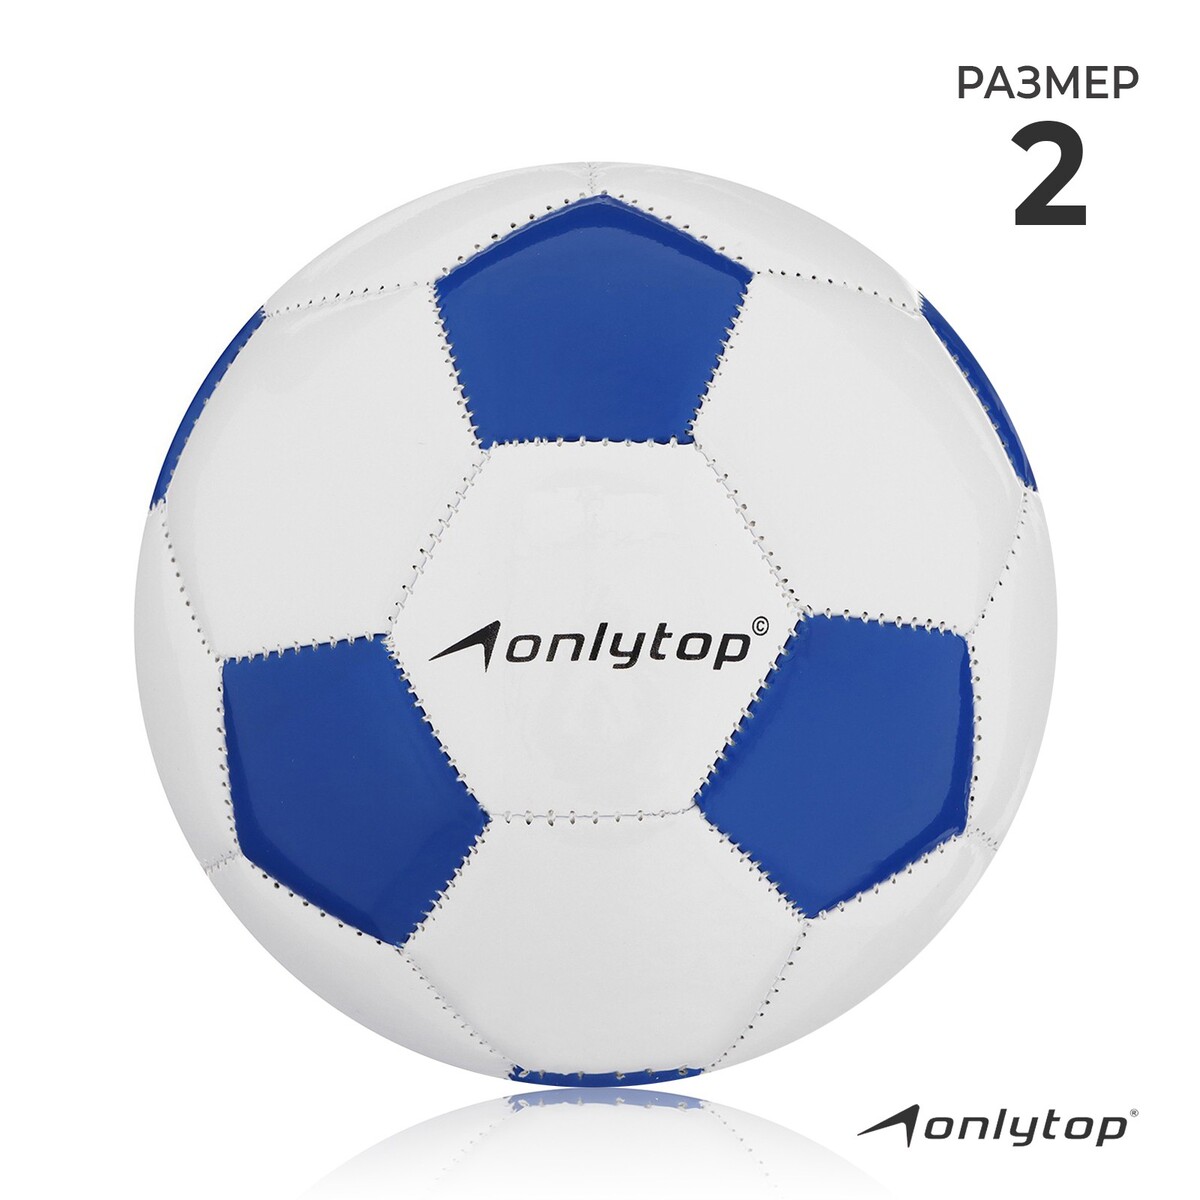 Мяч футбольный onlytop classic, pvc, машинная сшивка, 32 панели, р. 2 мяч футбольный classic f120615 р 5